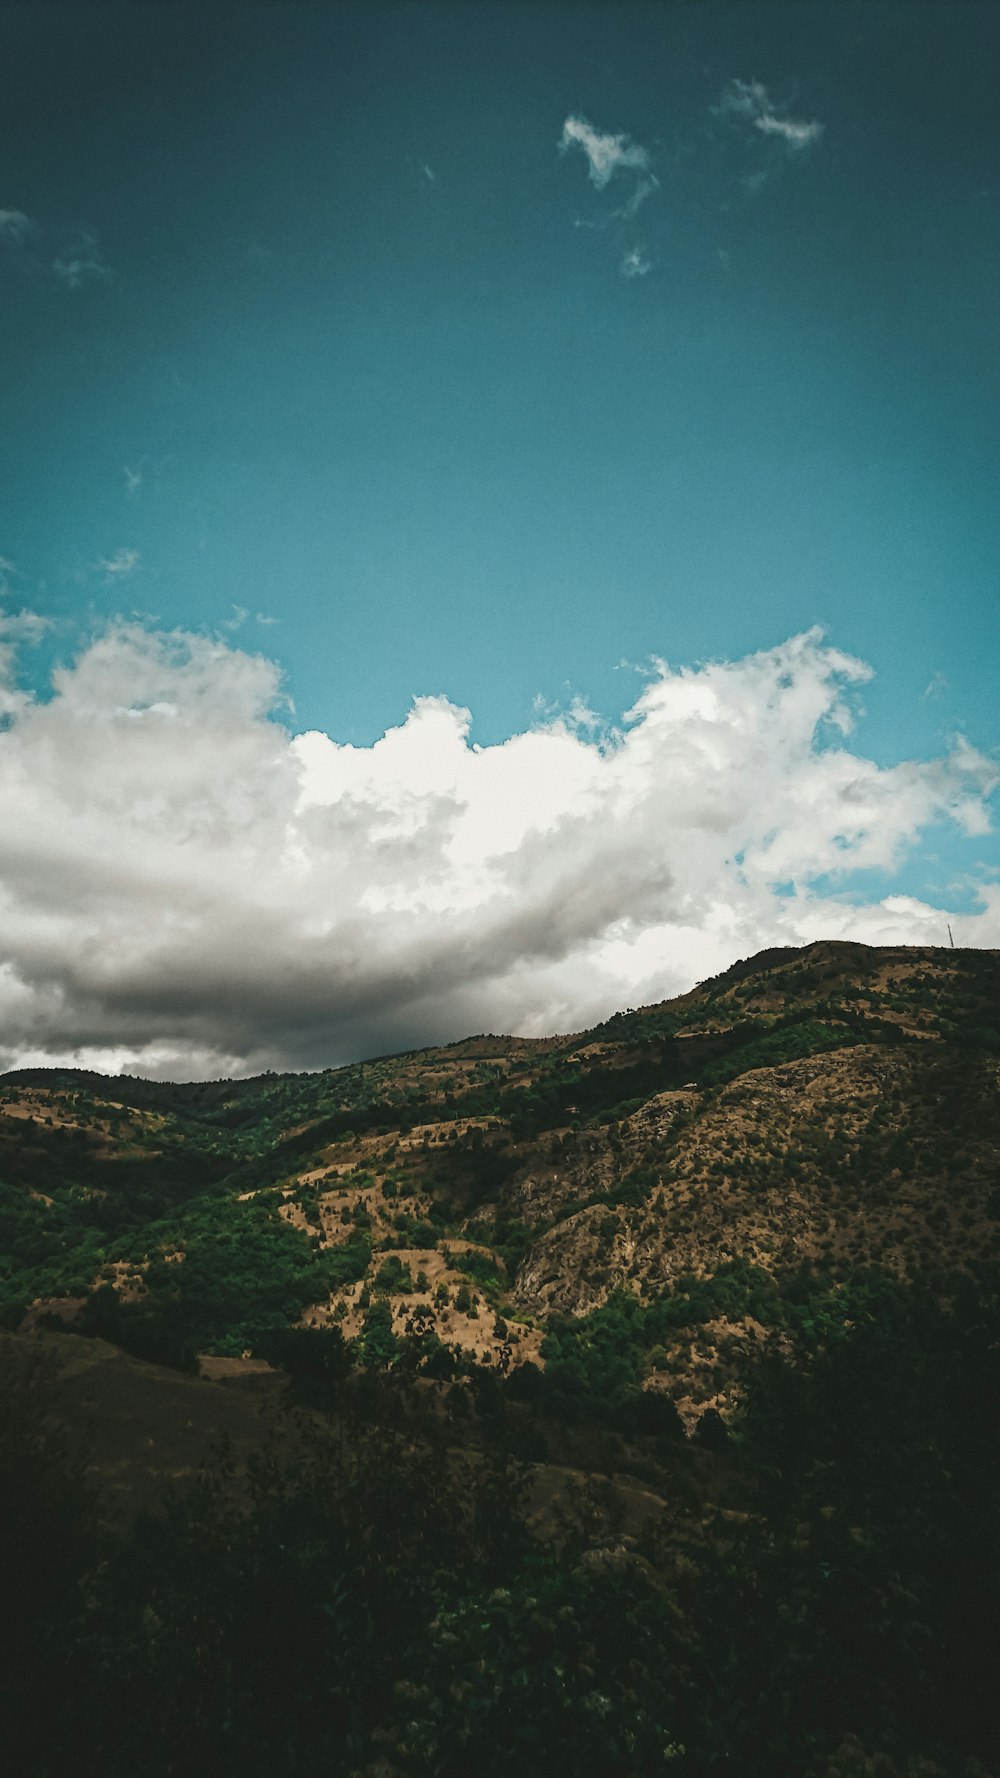 montanha verde e marrom sob céu azul e nuvens brancas durante o dia